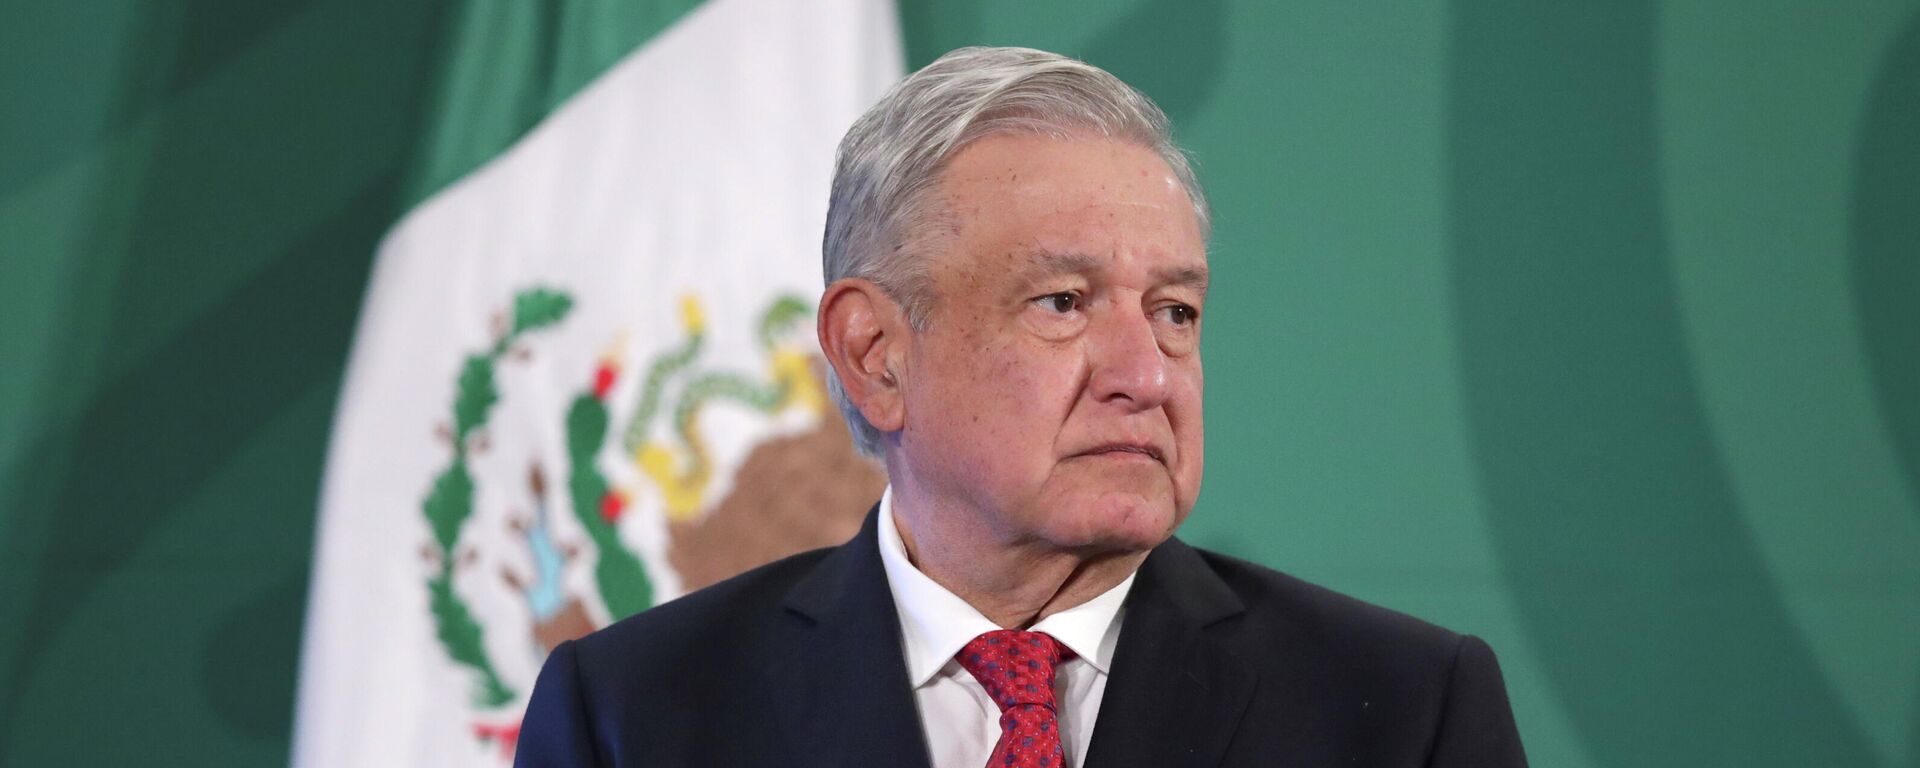 Andrés Manuel López Obrador, presidente de México - Sputnik Mundo, 1920, 27.04.2021